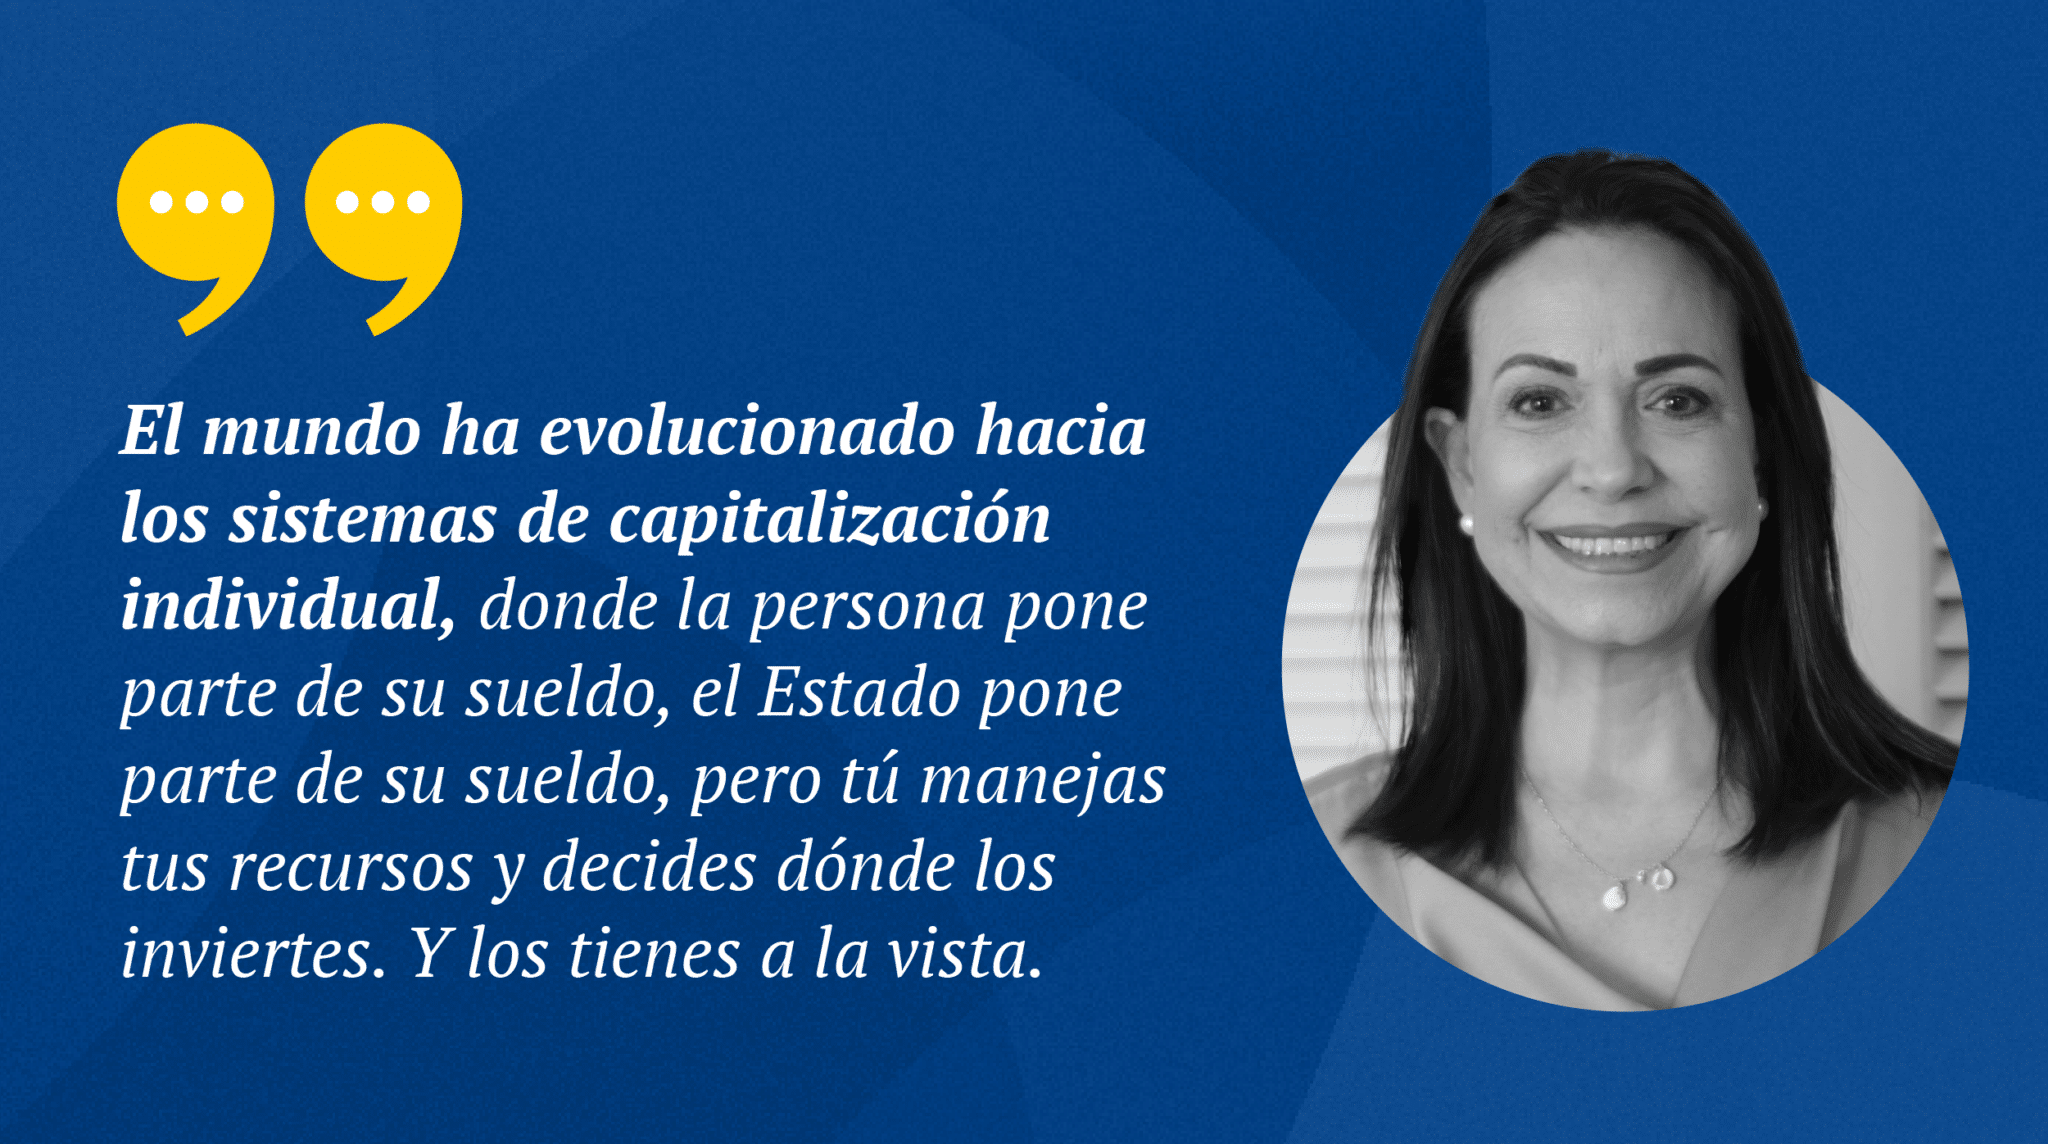 Elecciones primarias en Venezuela: las propuestas de María Corina Machado